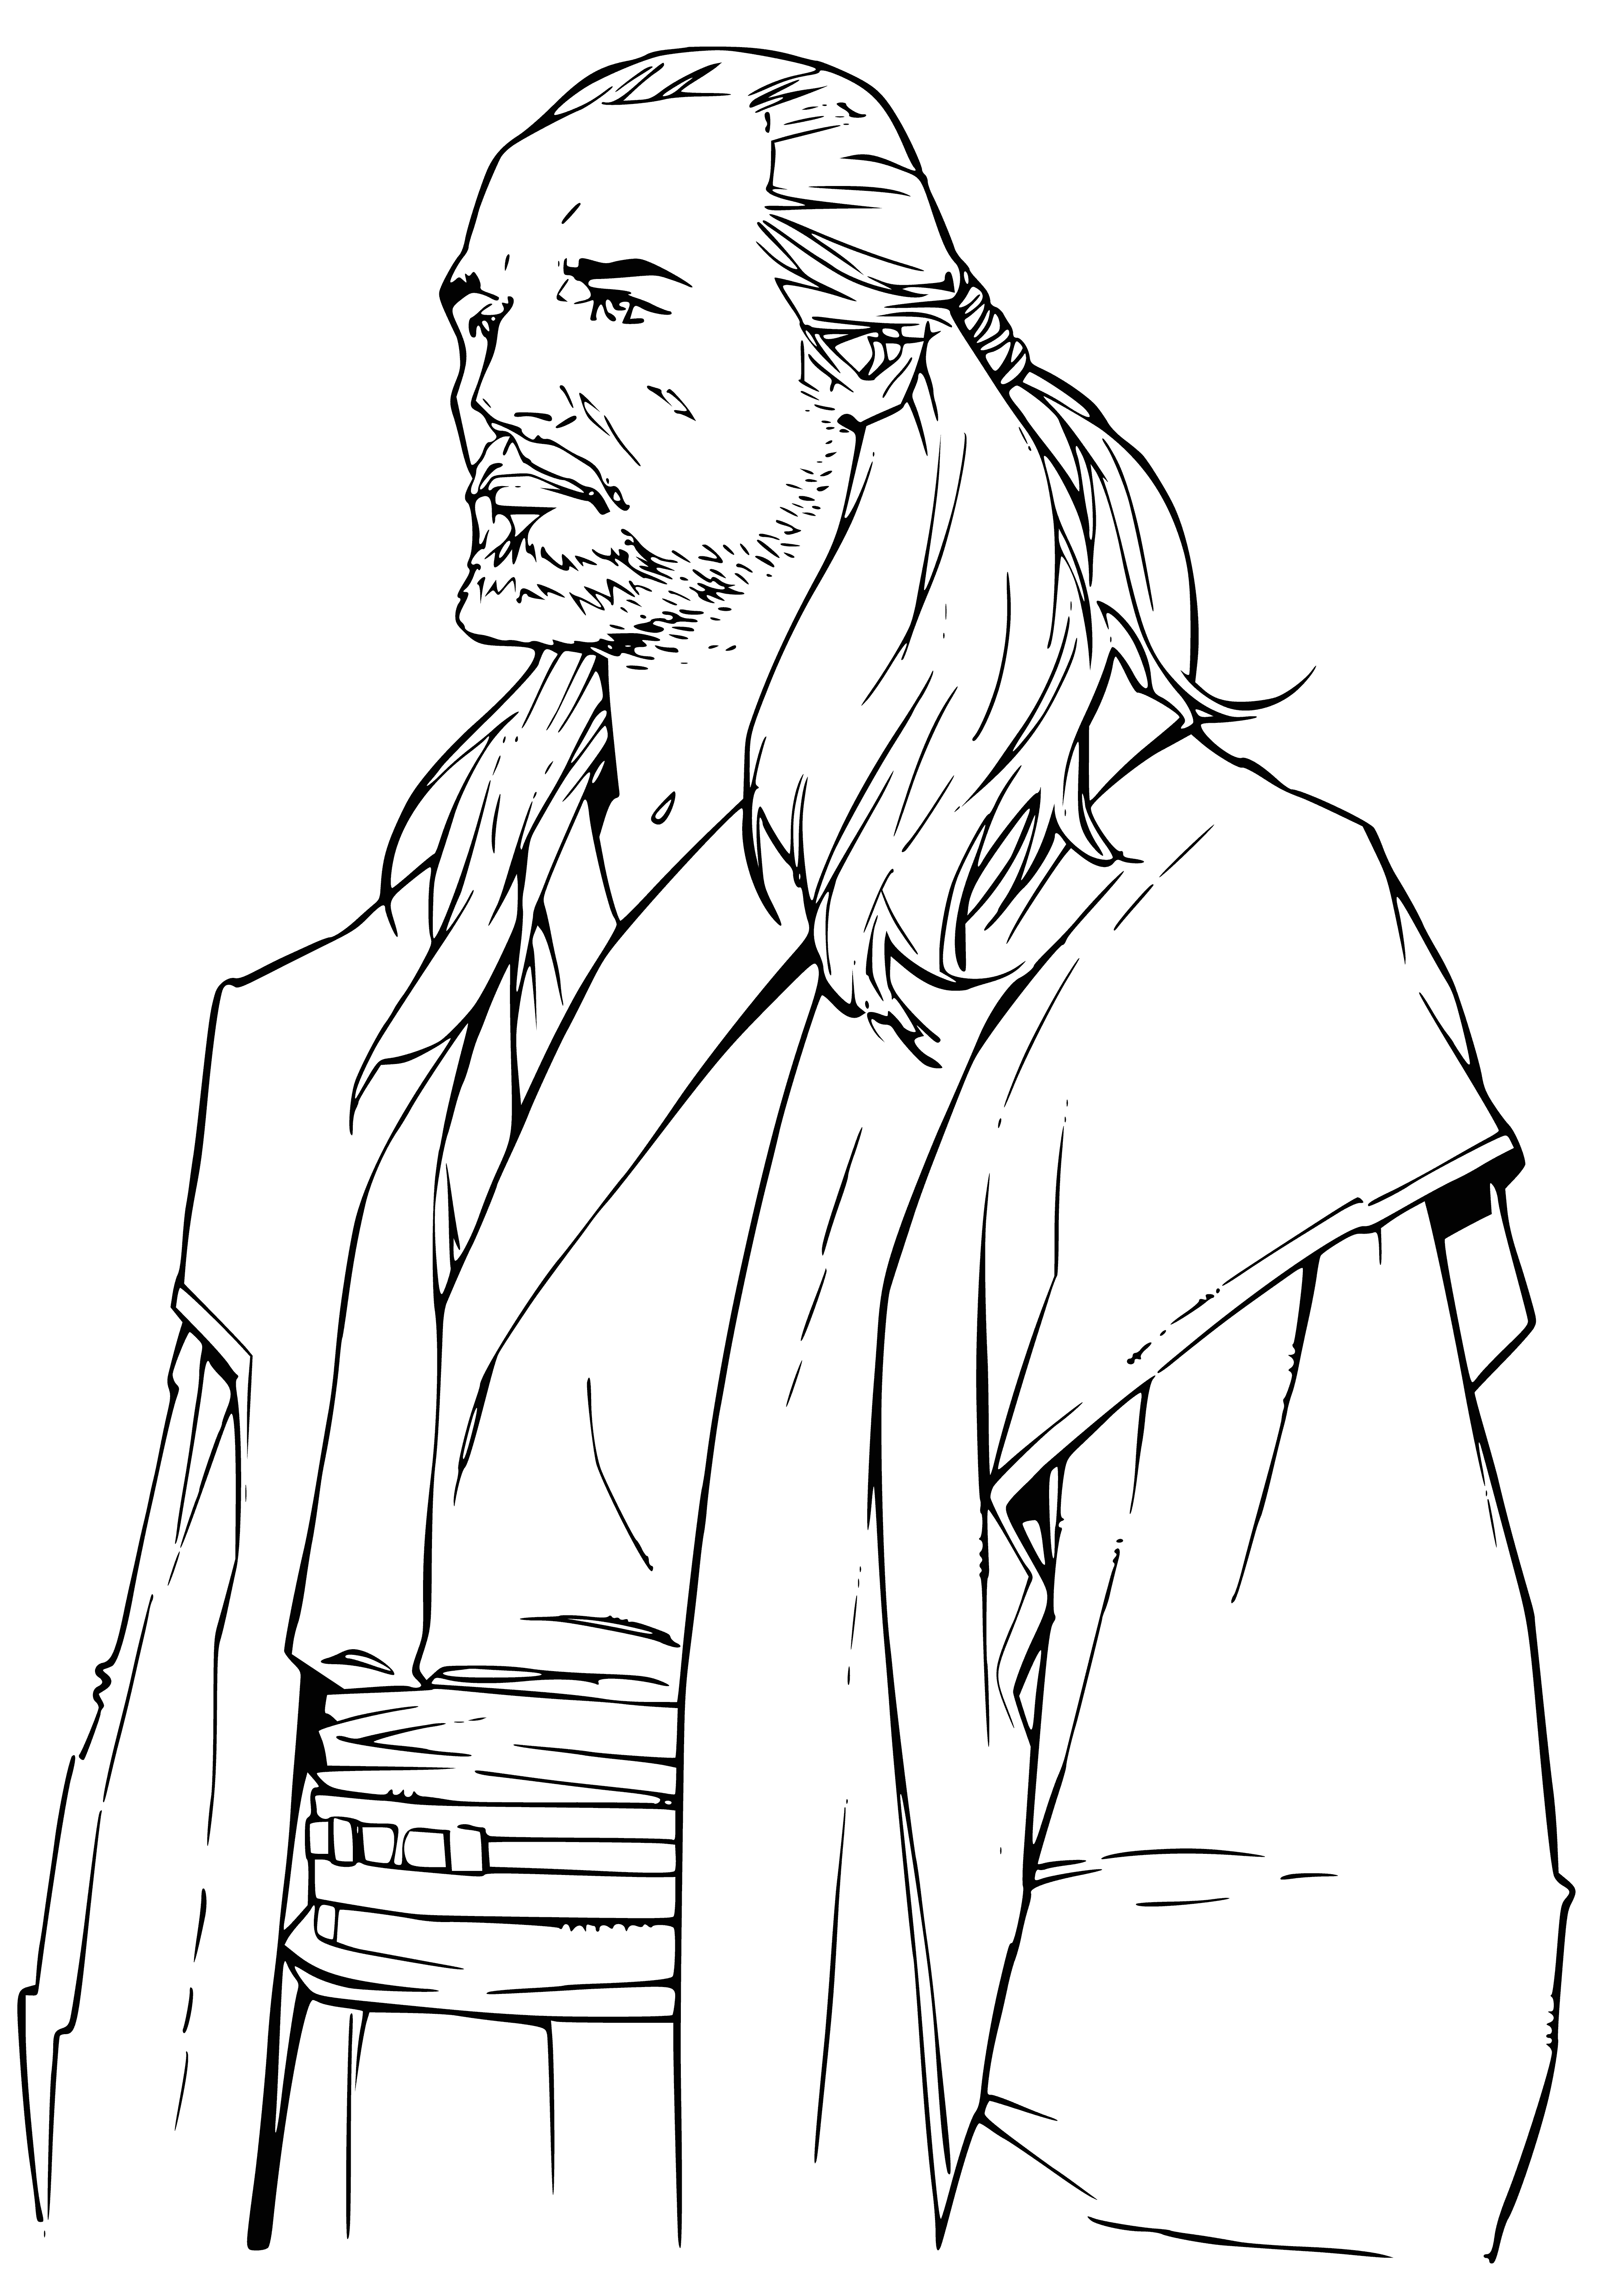 Jedi Master Qui-Gon Jinn coloring page